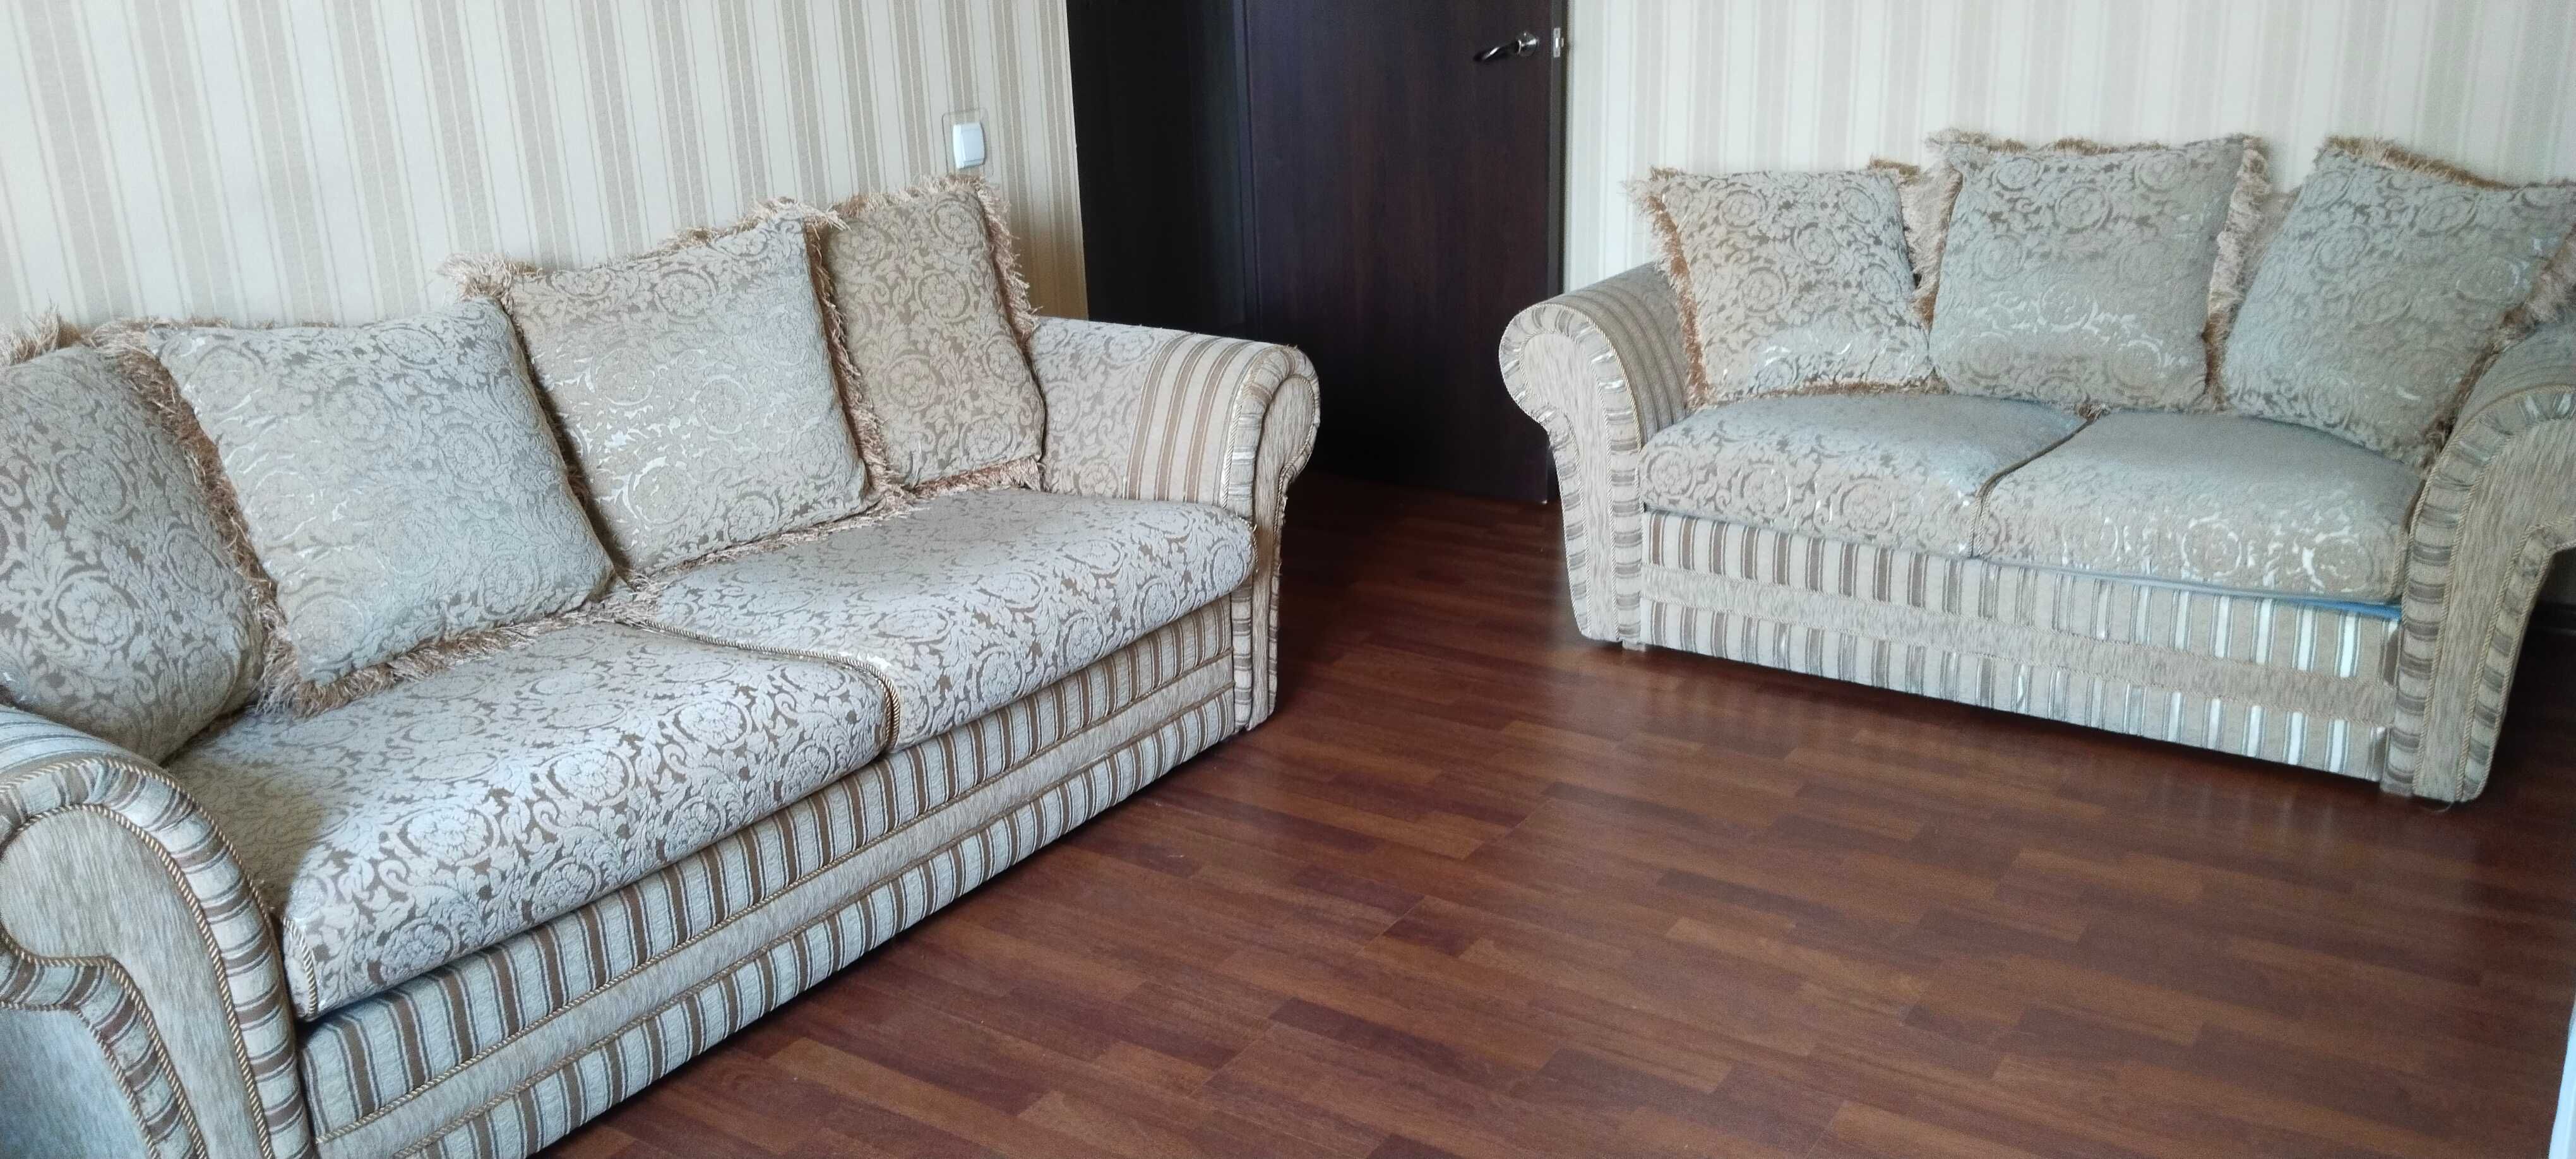 продаются два дивана с раскладушкой